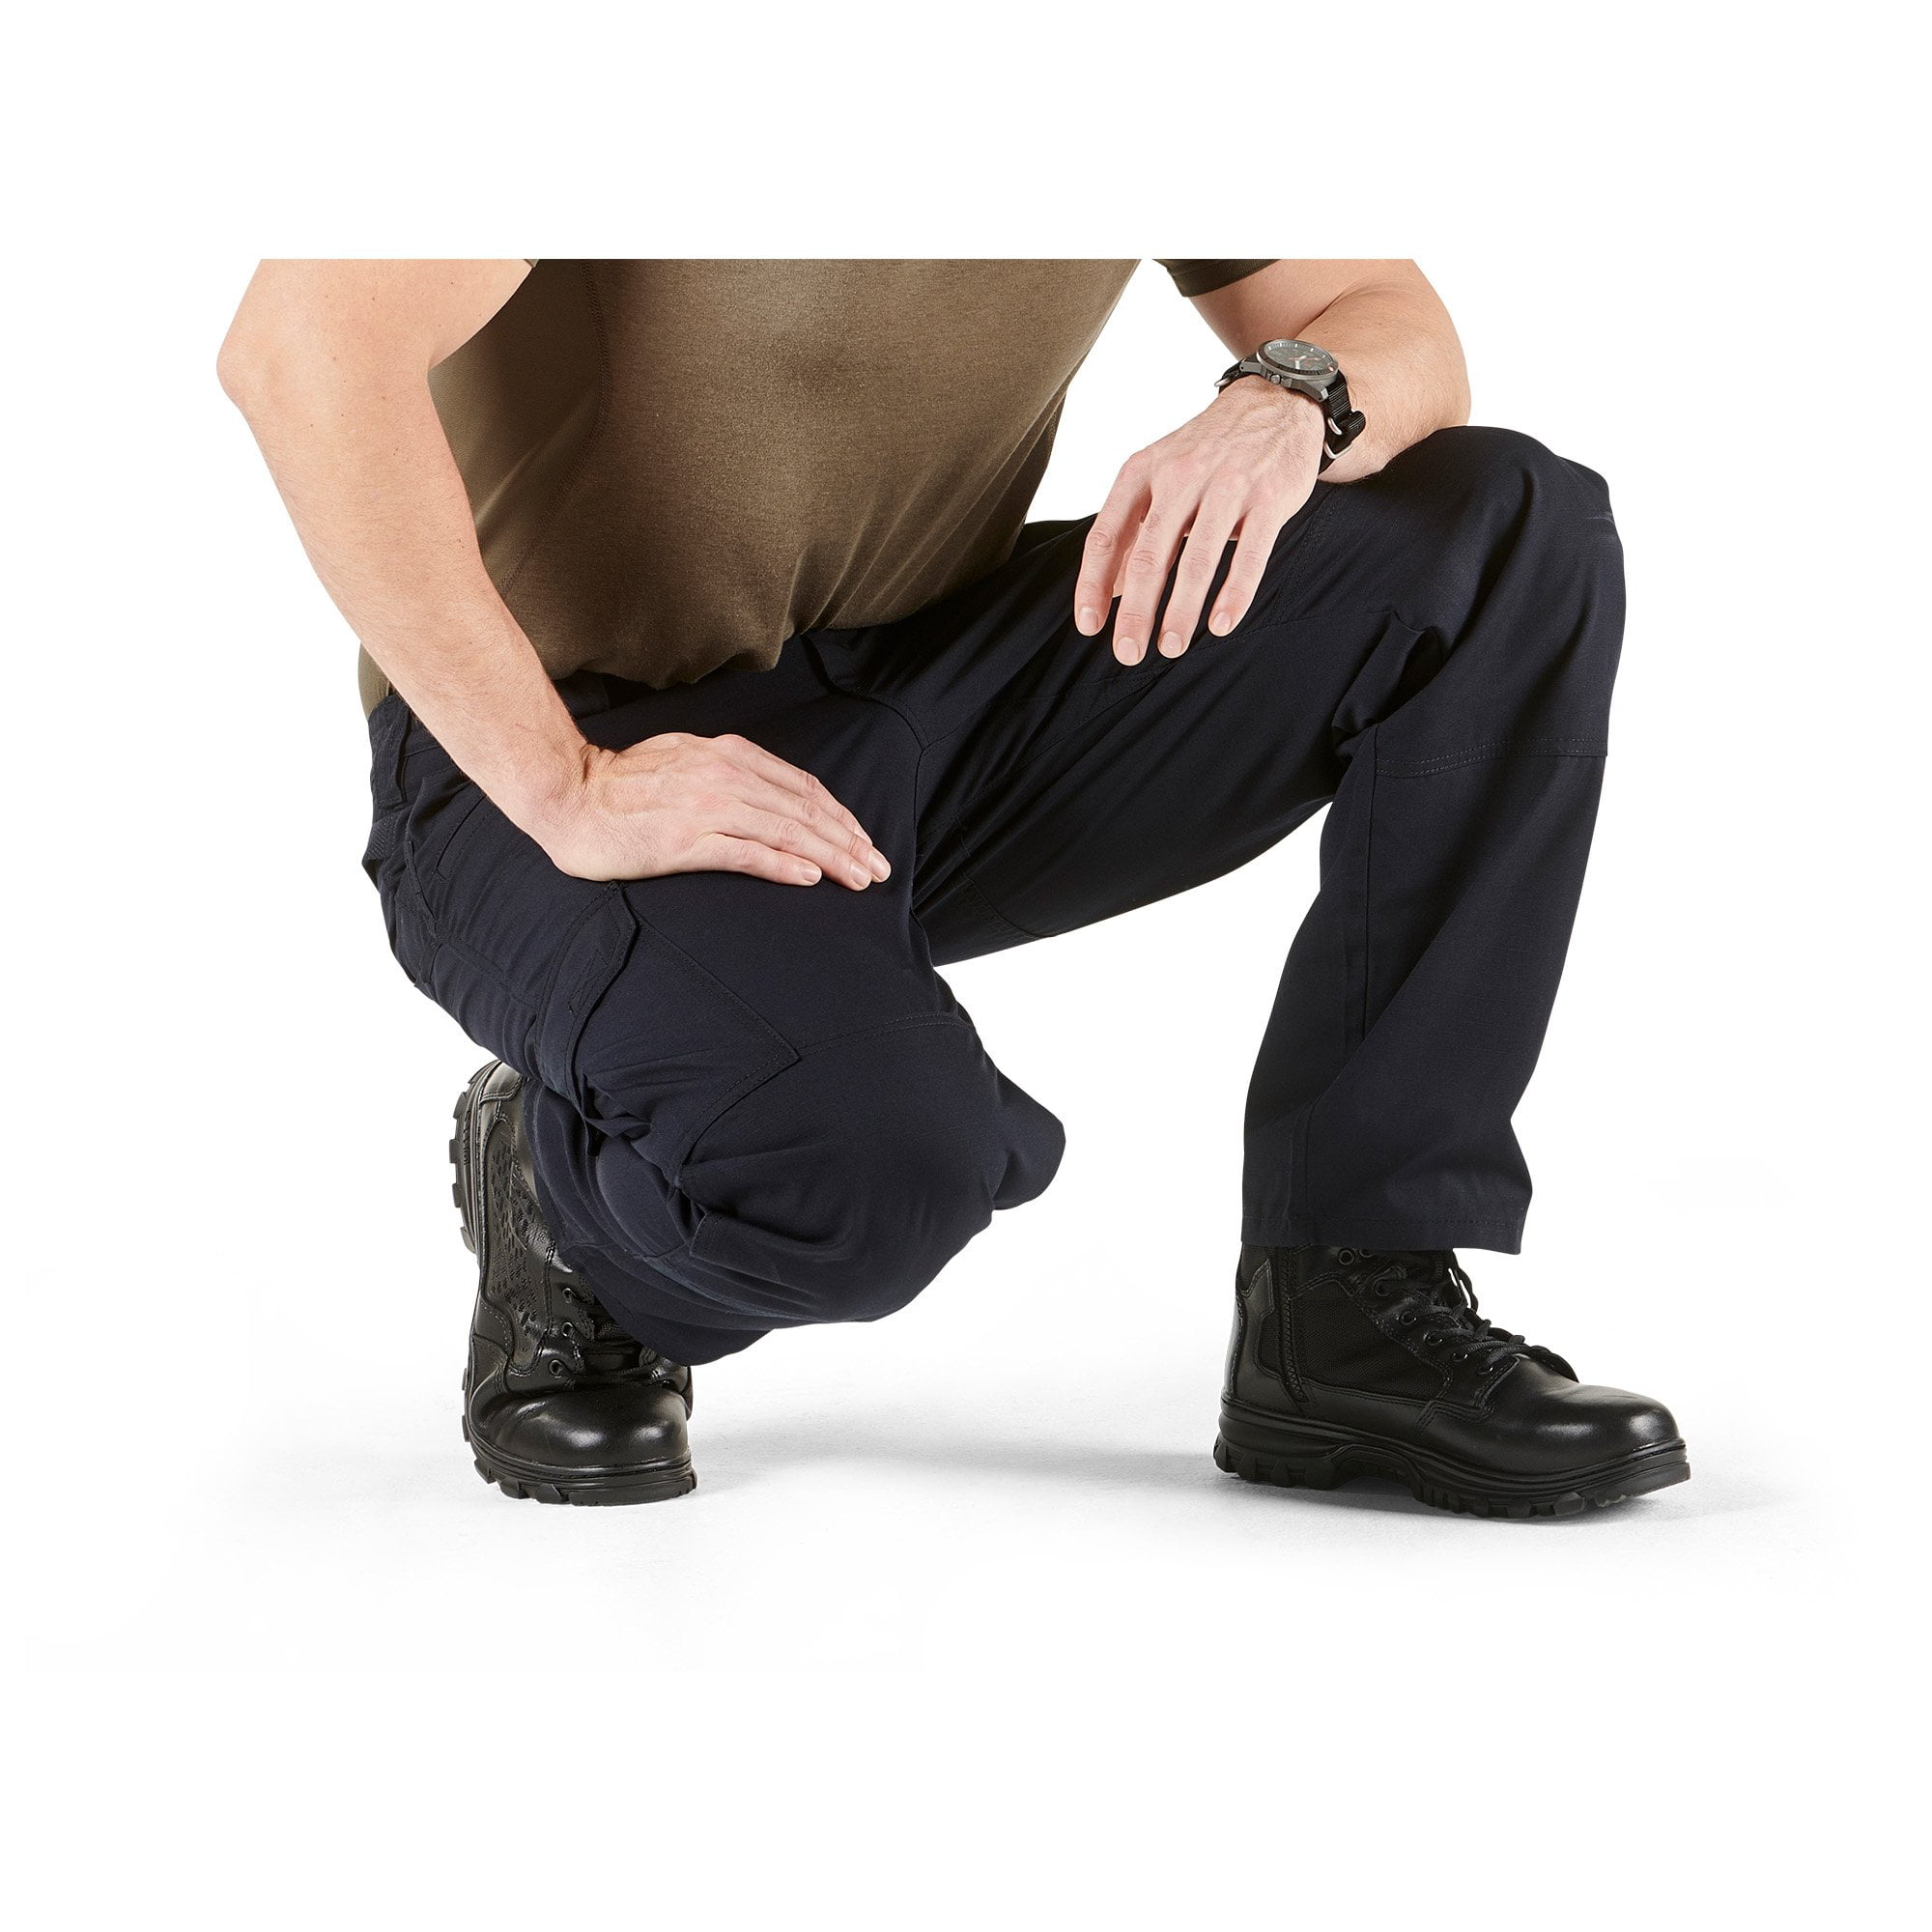 Pantalon Taclite Pro Homme 5.11 Tactical - Cargo / Terrain sur   - Vêtements militaire et Equipements de Sécuri